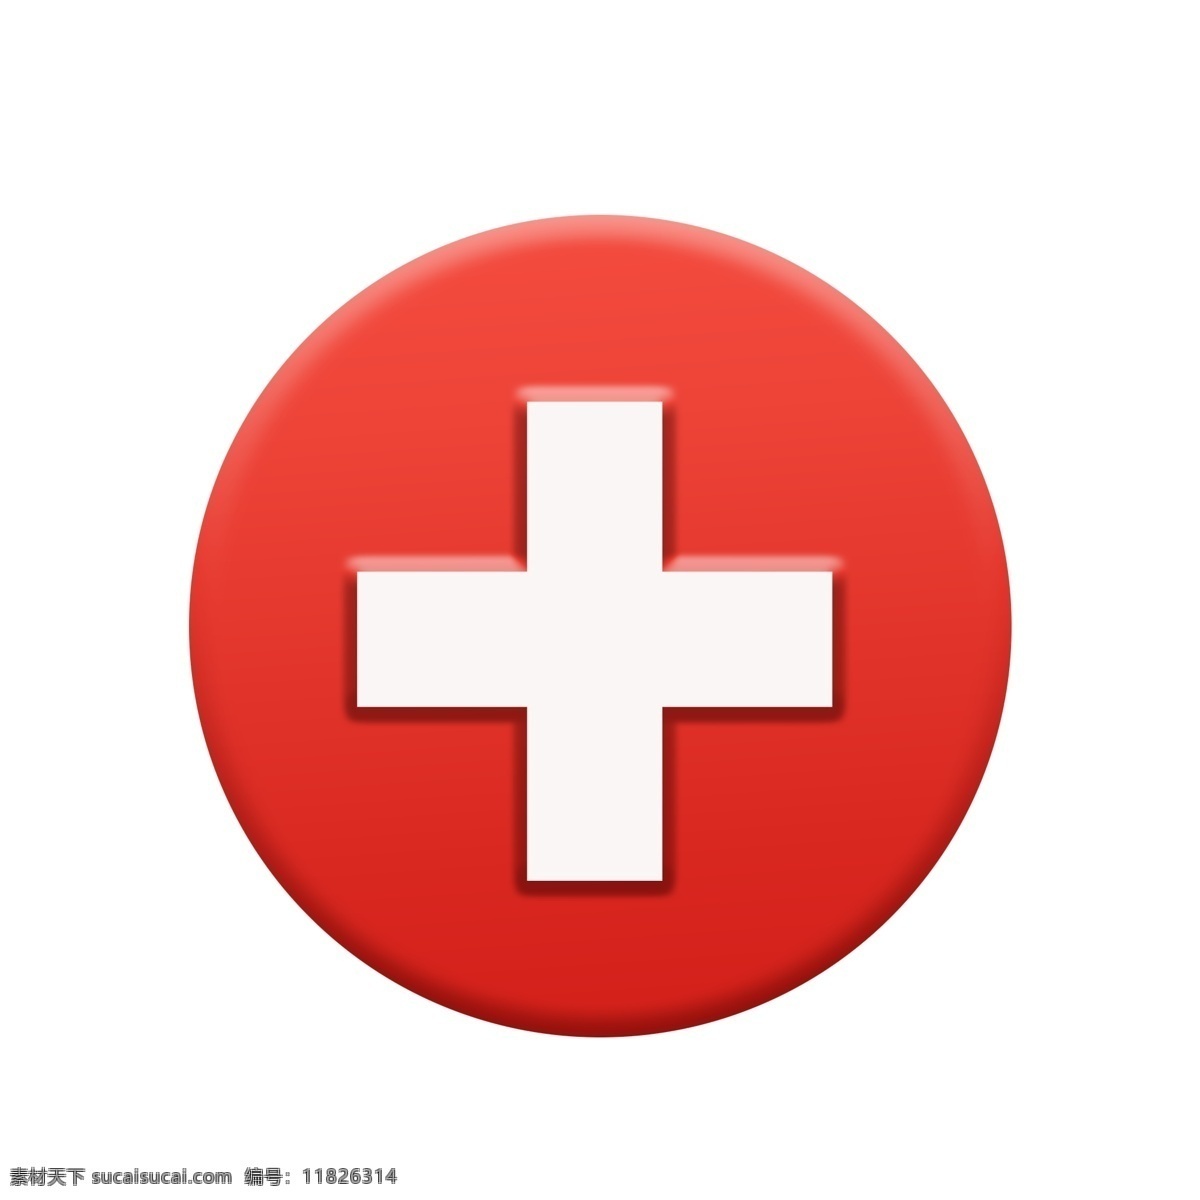 十字 红十字元素 红十字素材 红十字装饰 元素设计 分层